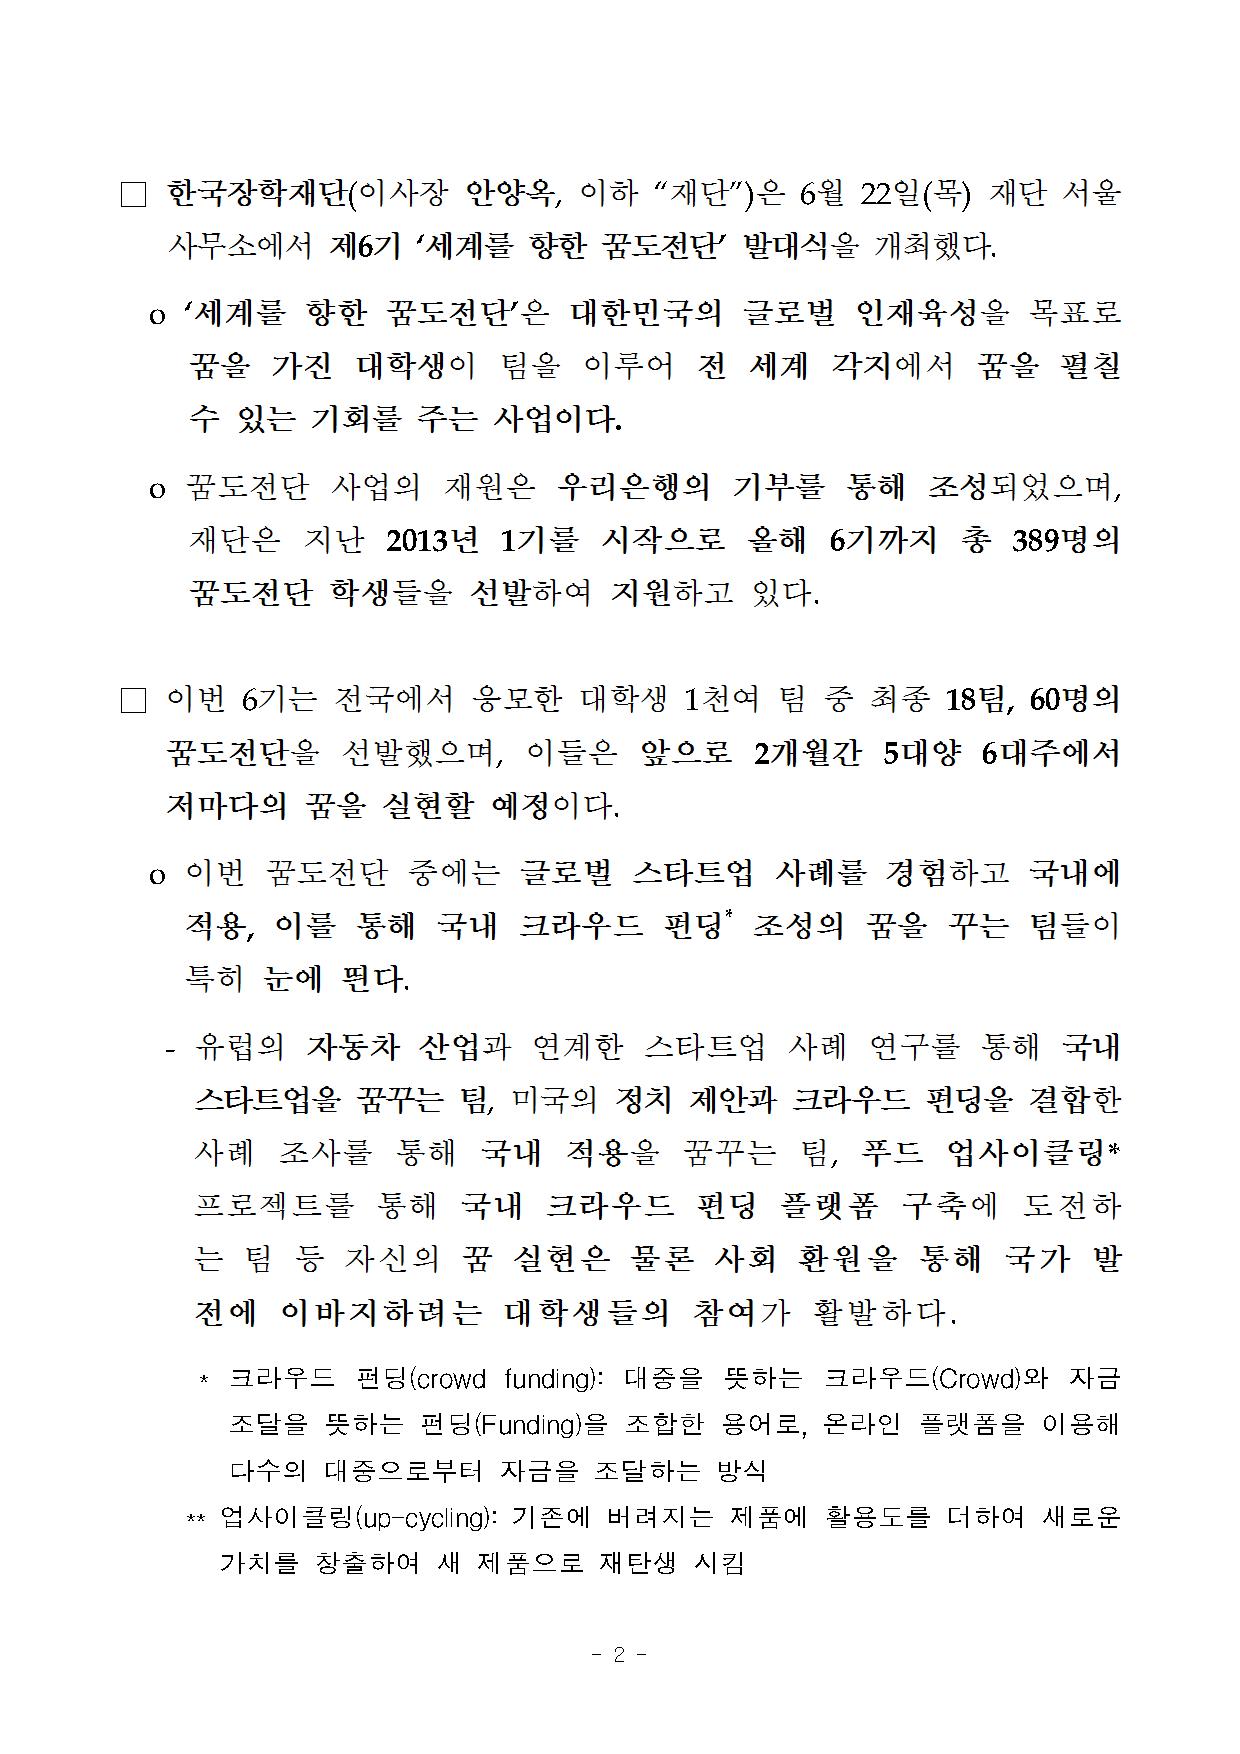 06-22(목)[보도자료]한국장학재단, 세계를 향한 꿈도전단 출정002.jpg